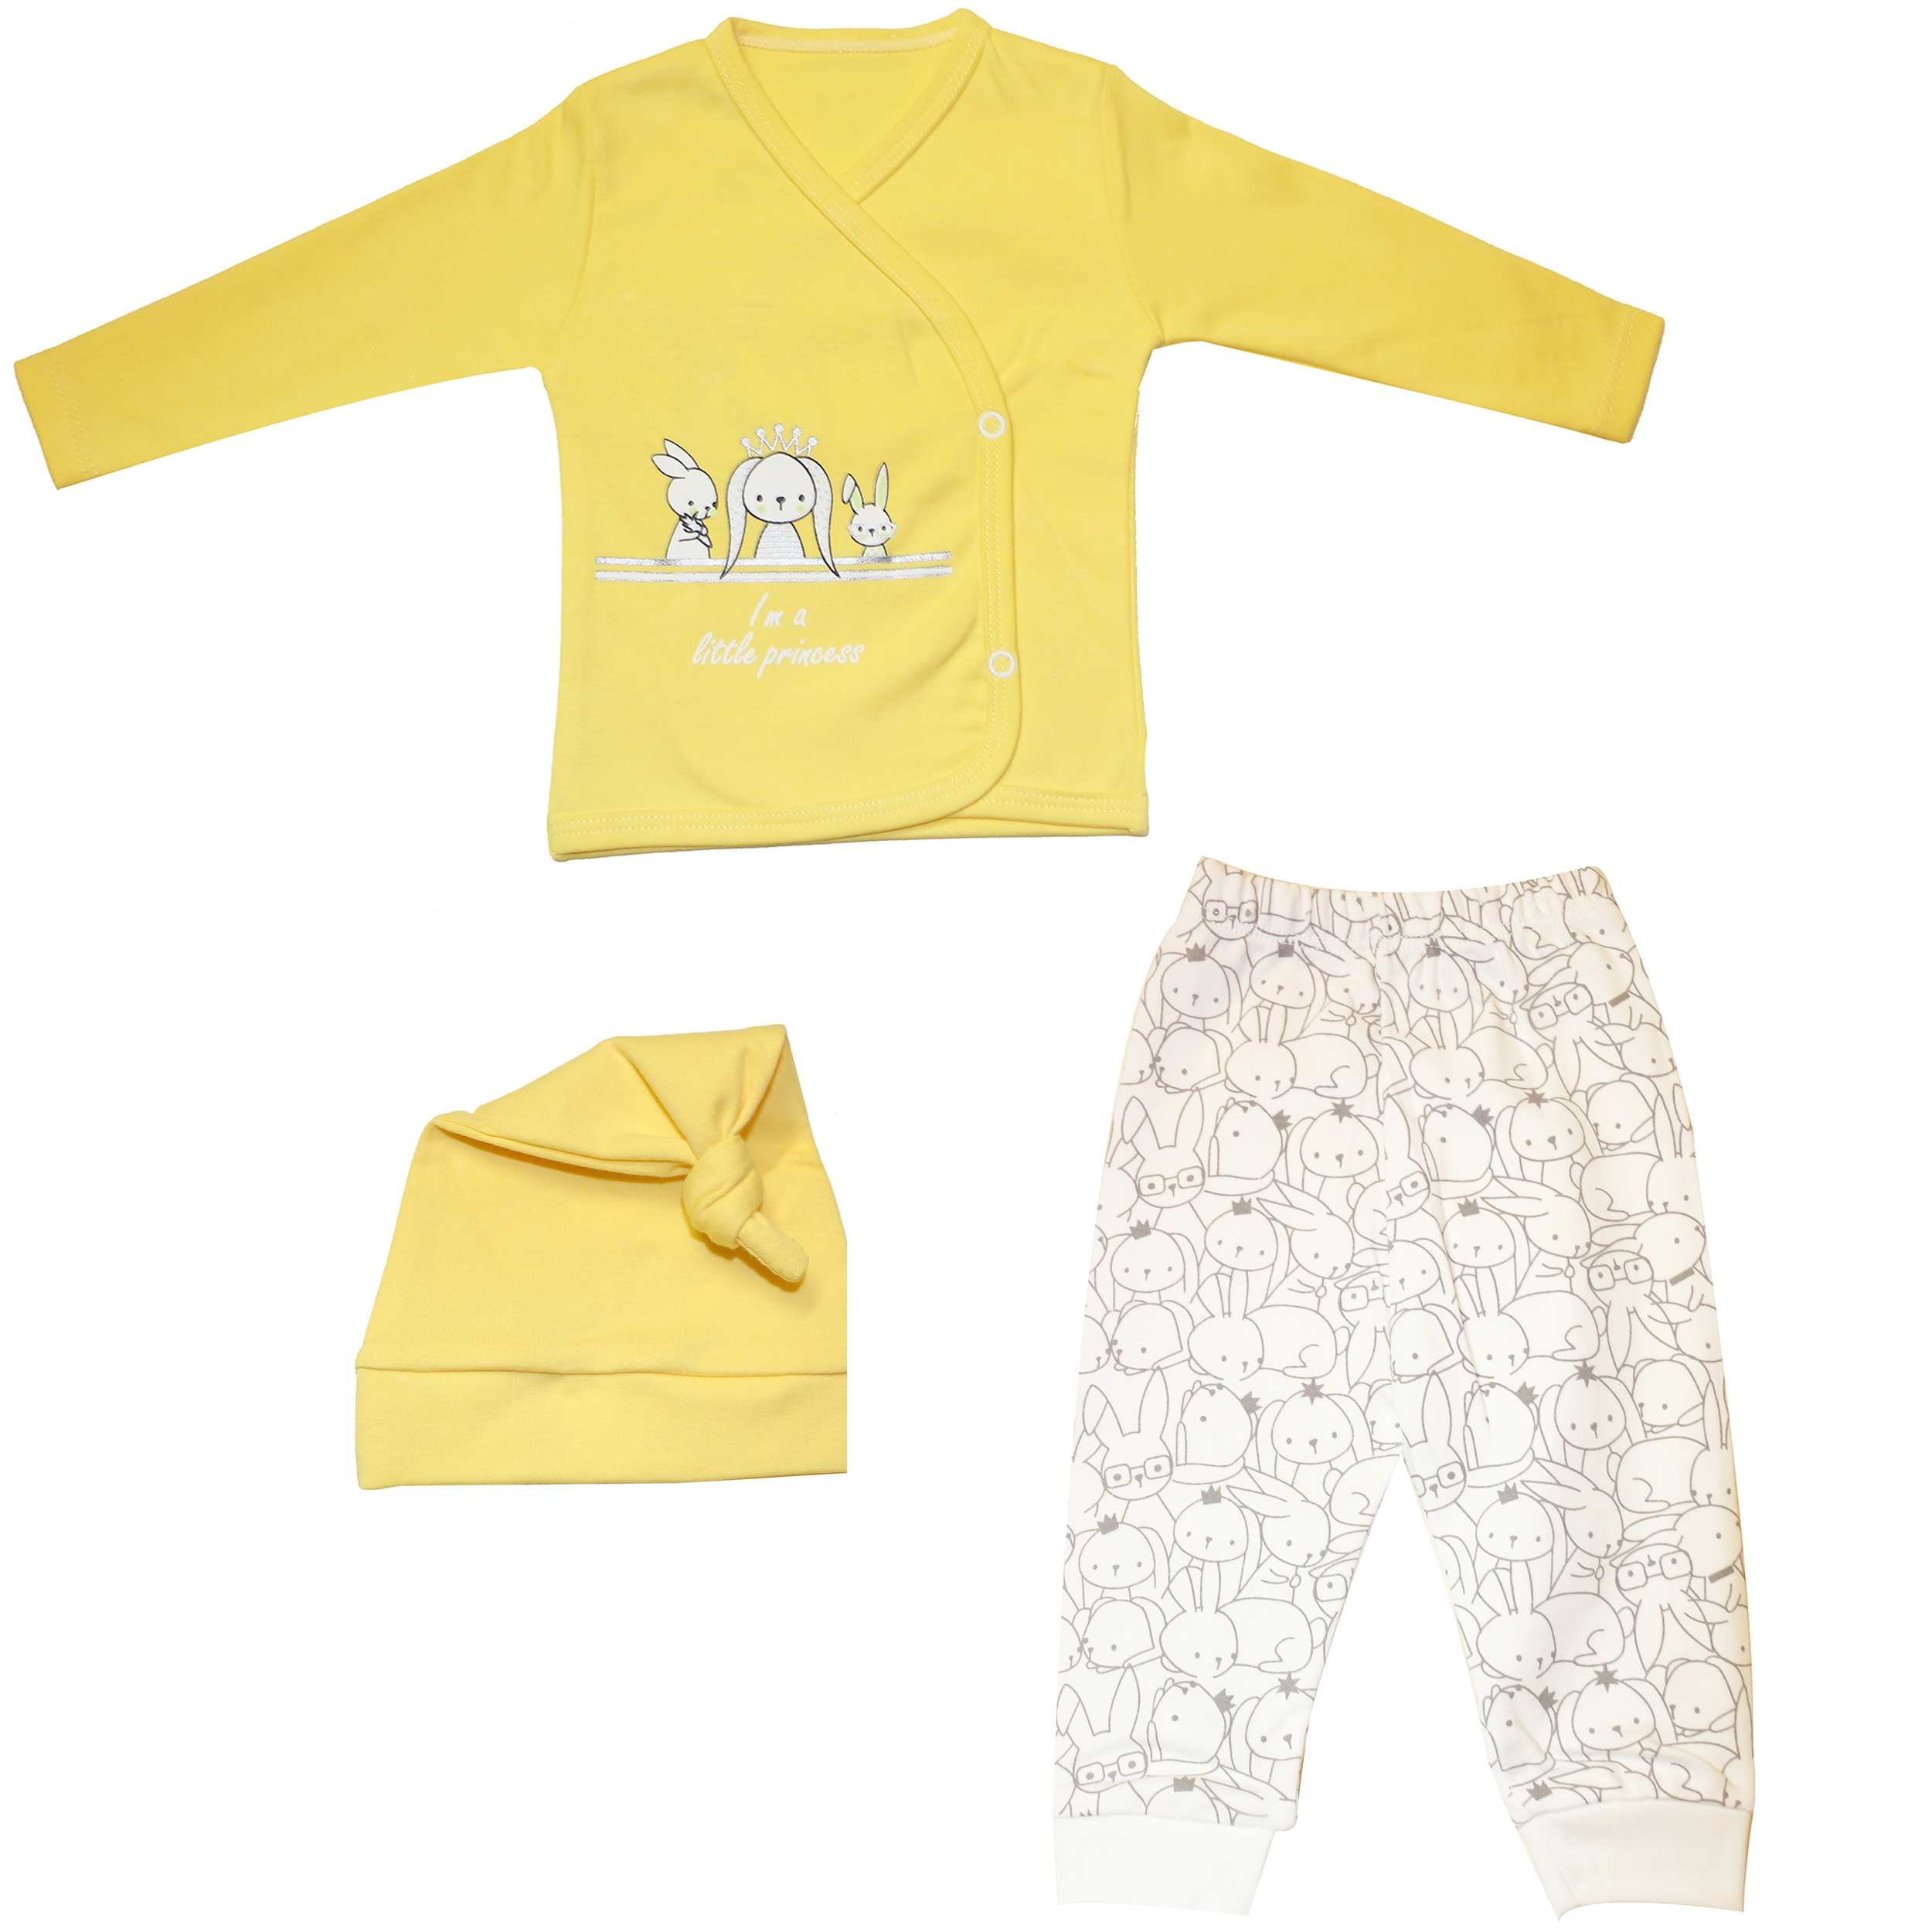 نقد و بررسی ست 3 تکه لباس نوزادی دخترانه مدل خرگوش رنگ زرد توسط خریداران